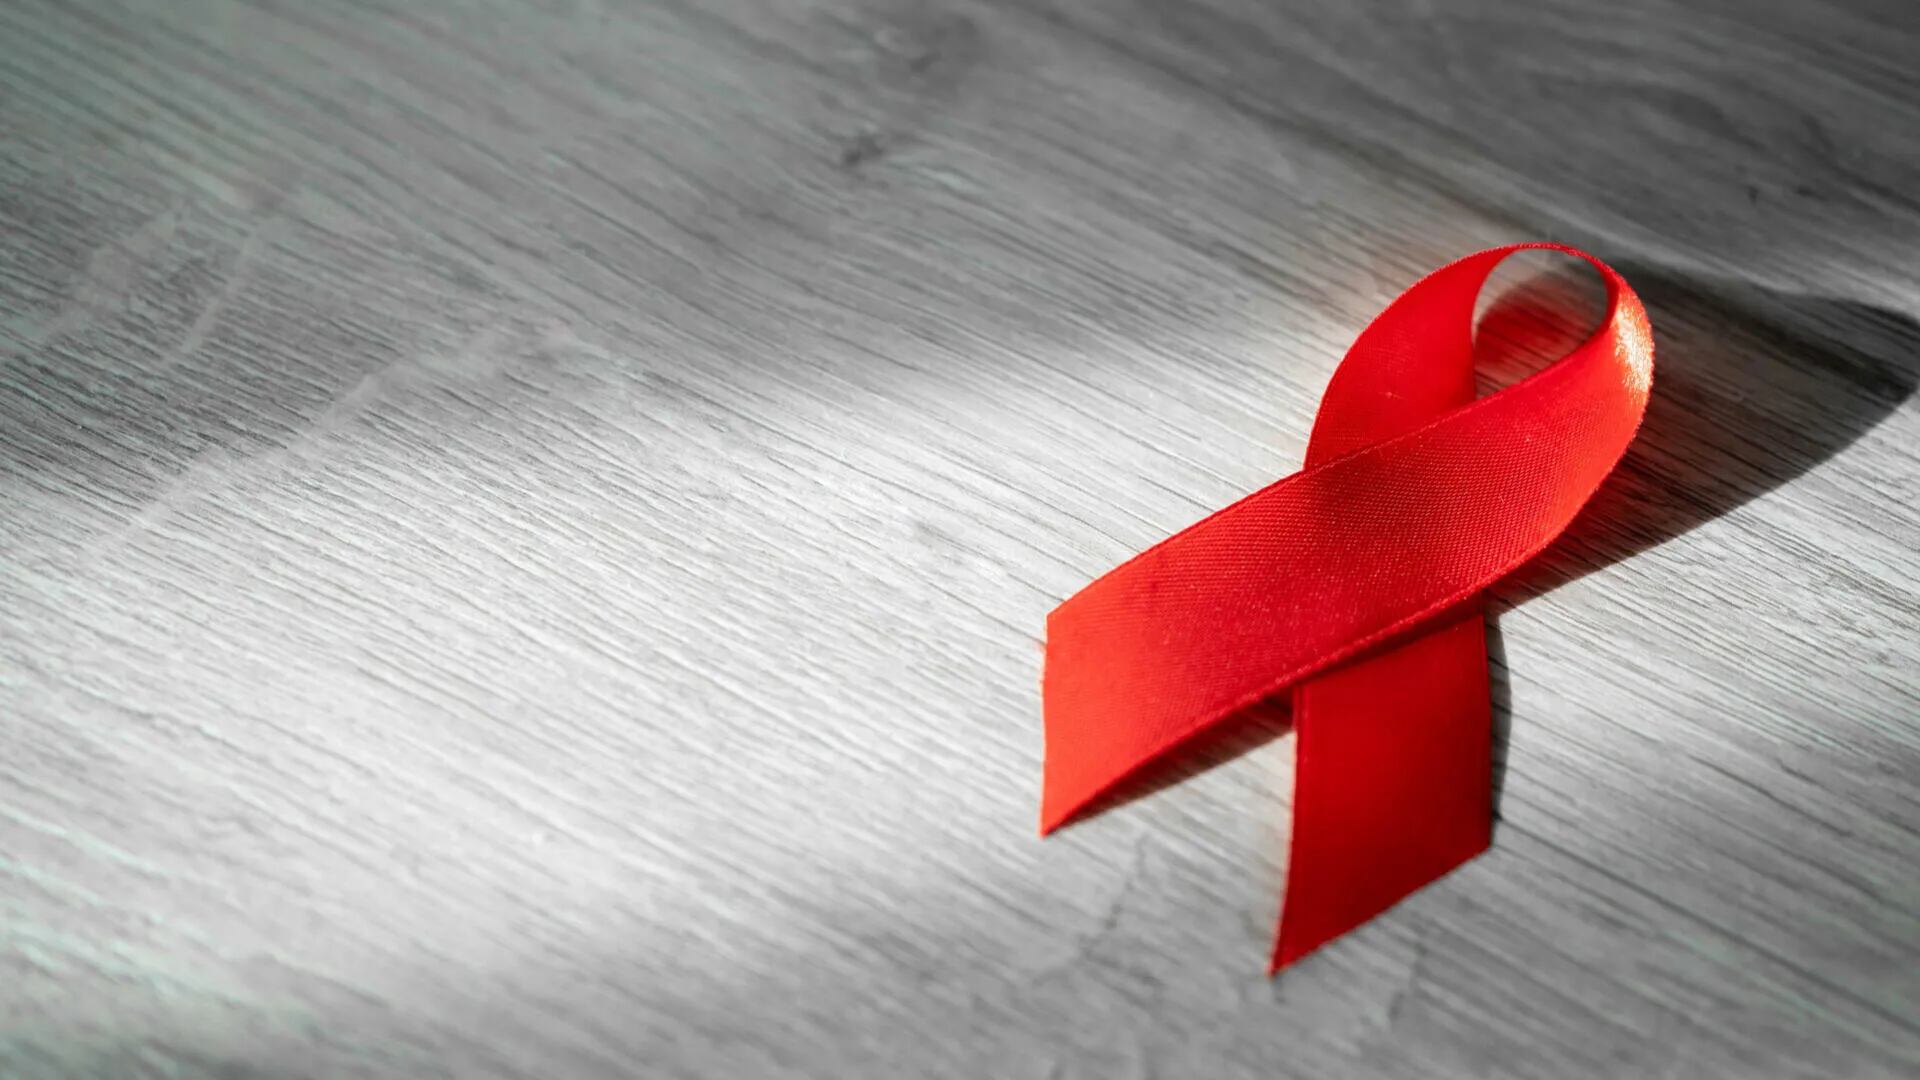 Moderna comienza los ensayos en humanos de una vacuna contra el VIH con ARN mensajero